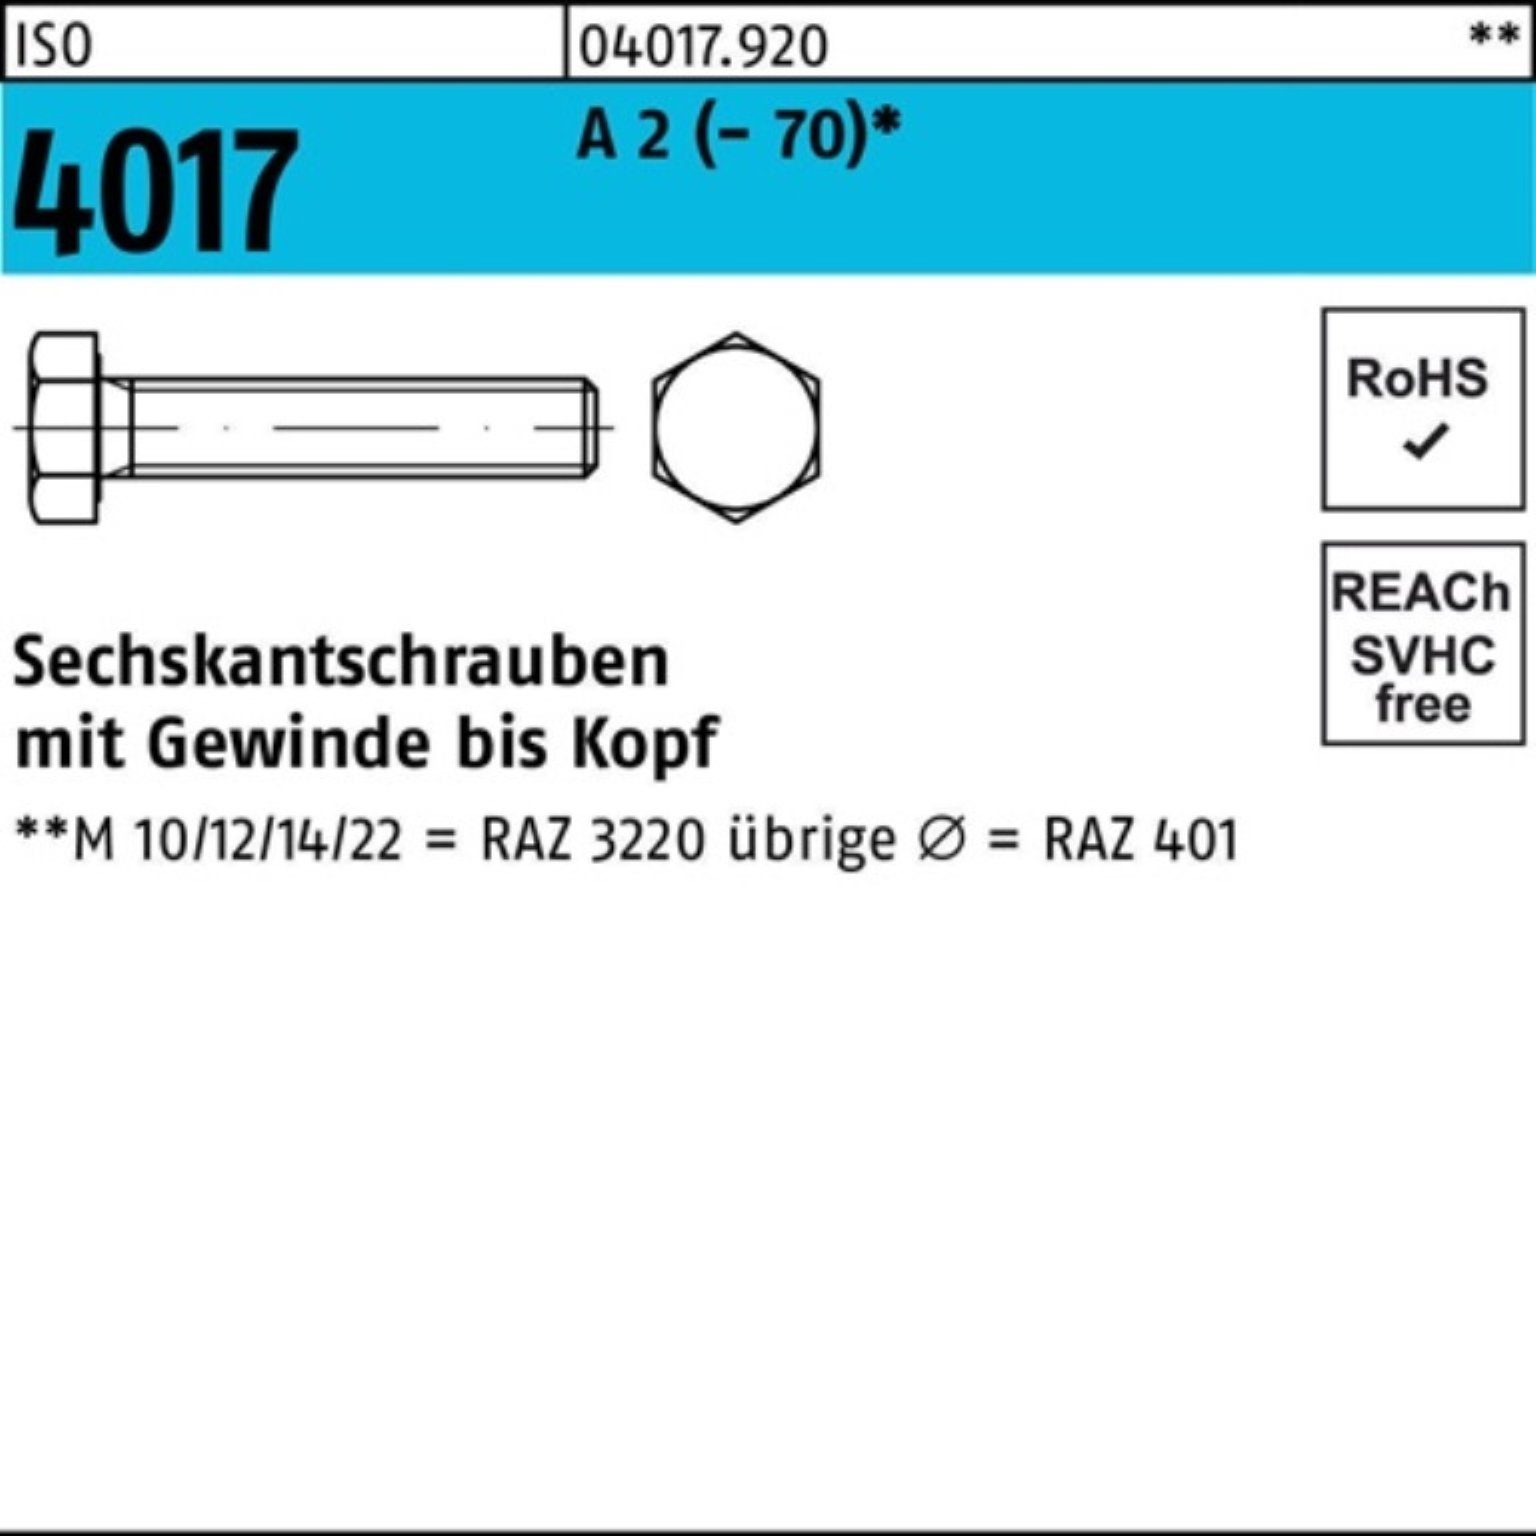 Bufab Sechskantschraube 100er Pack Sechskantschraube ISO 4017 VG M10x 40 A 2 (70) 100 Stück